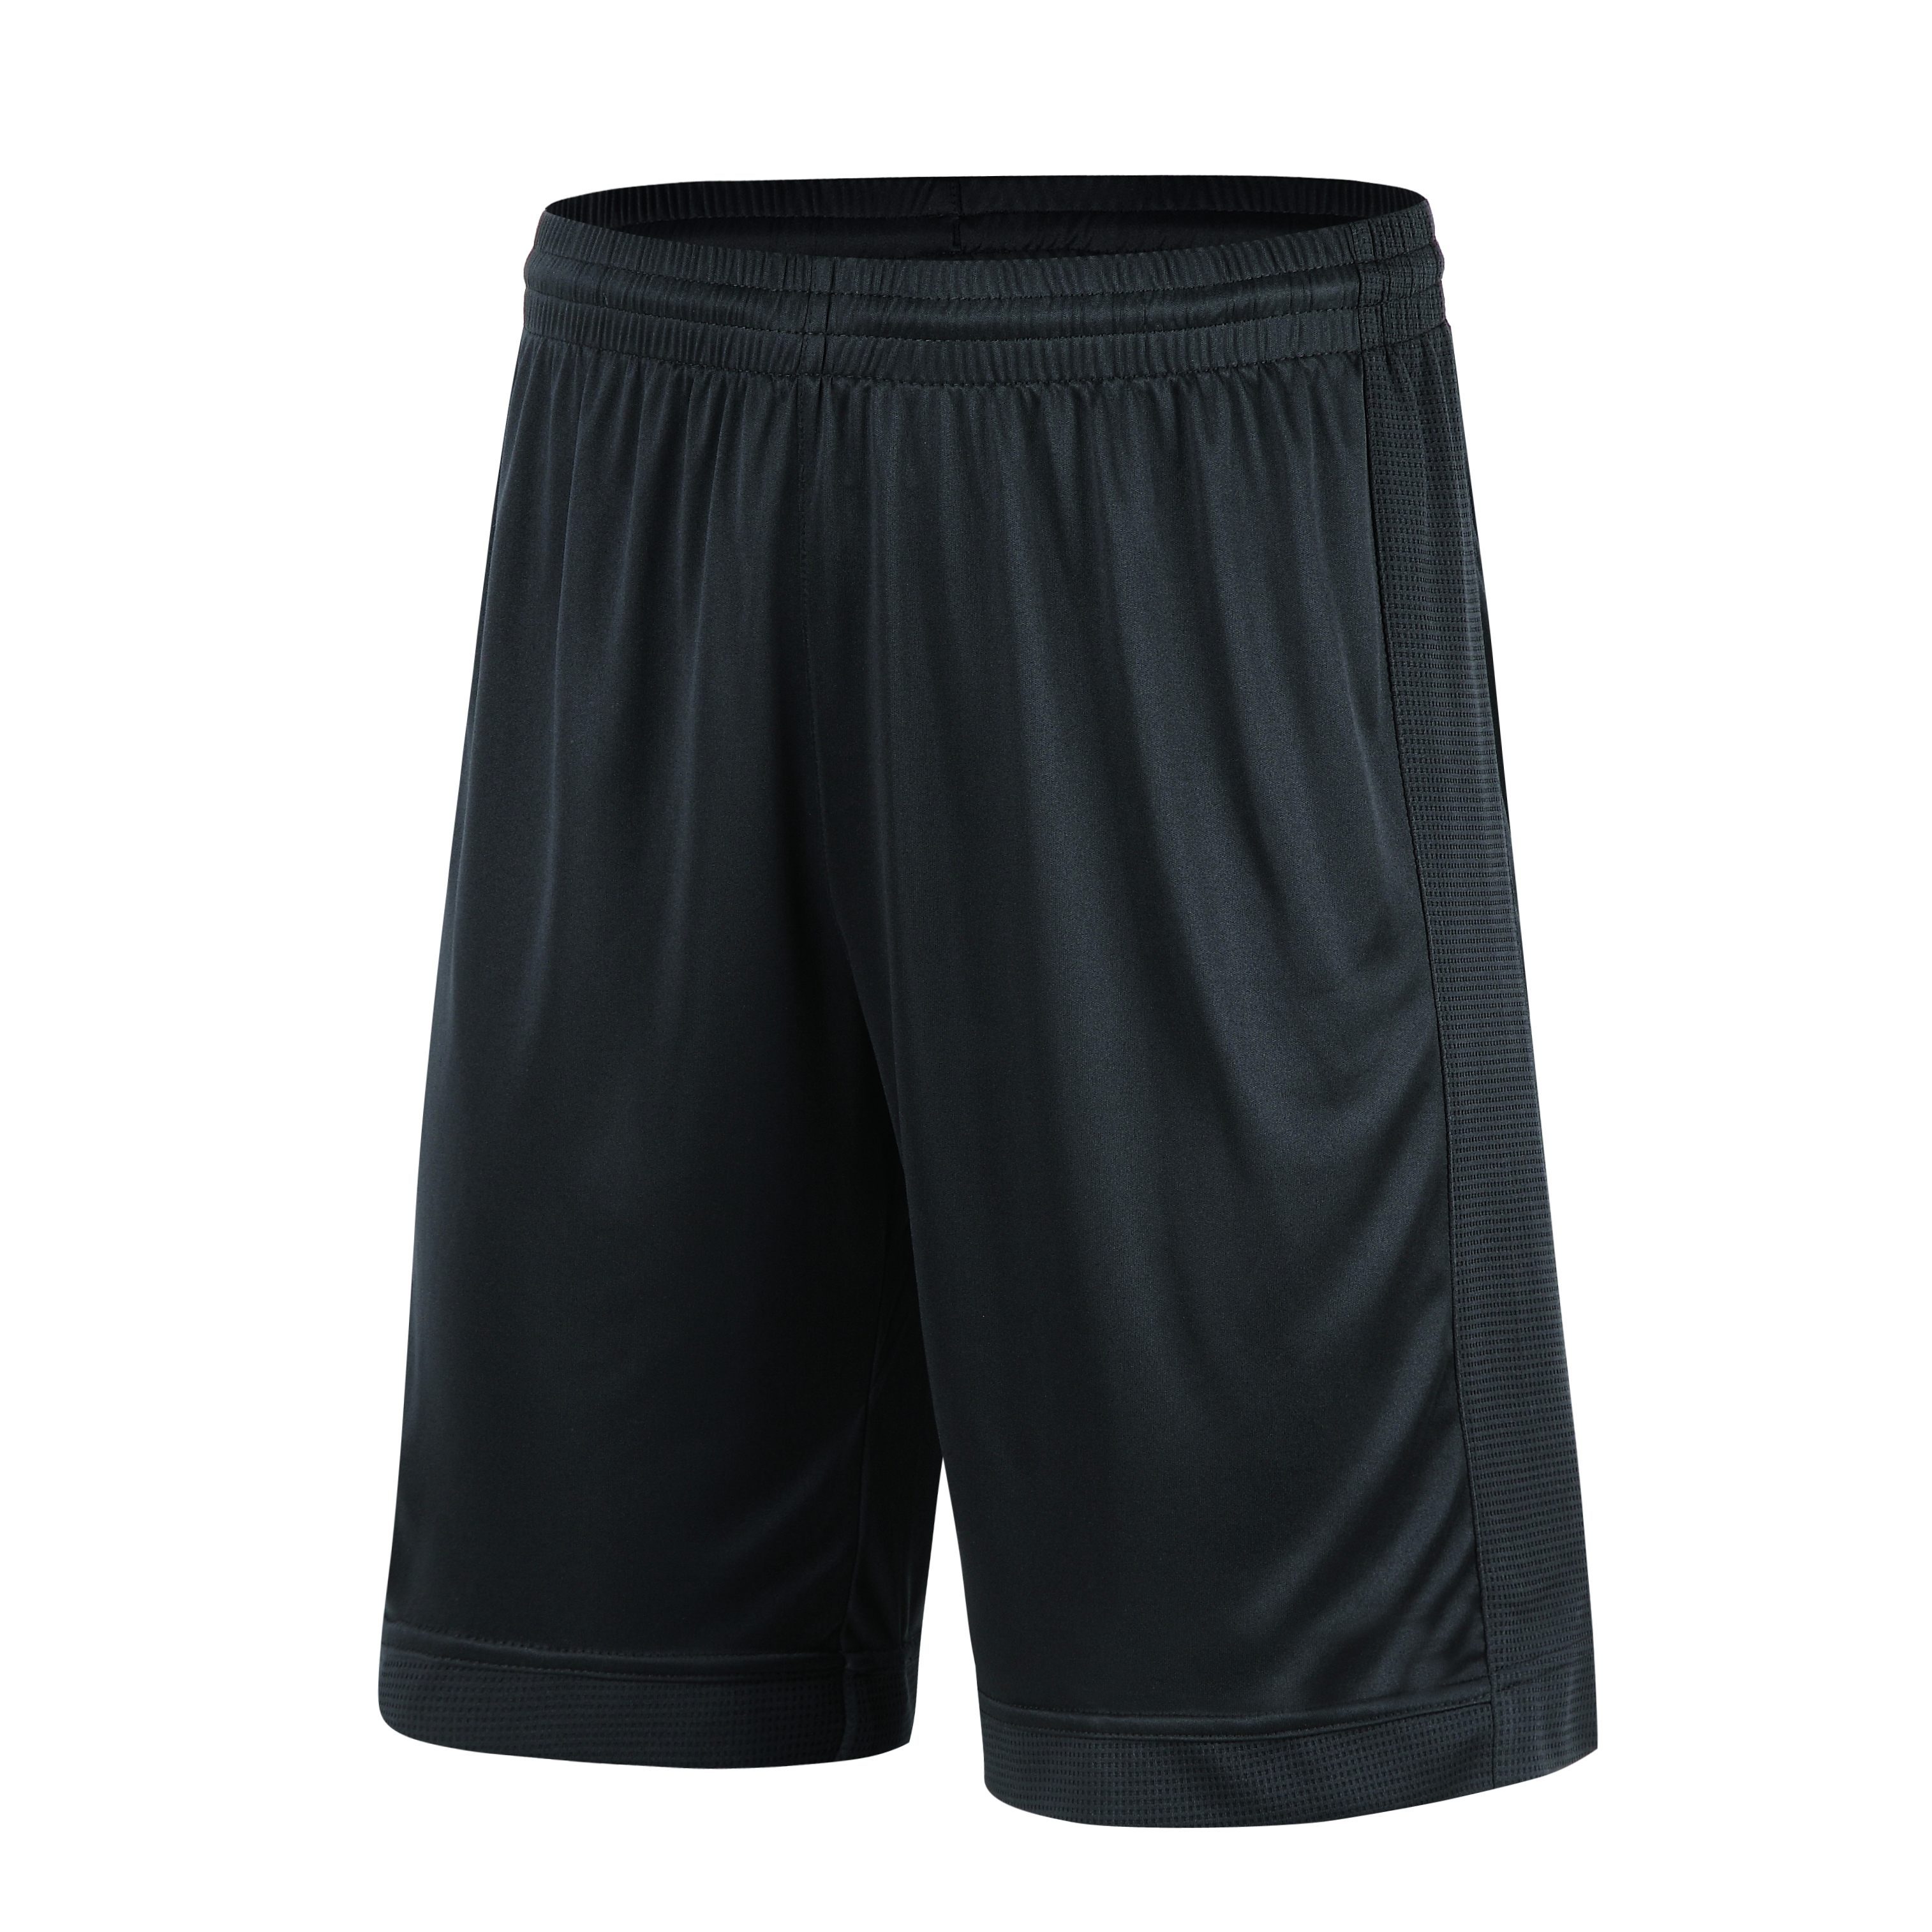 Men’s Soccer shorts